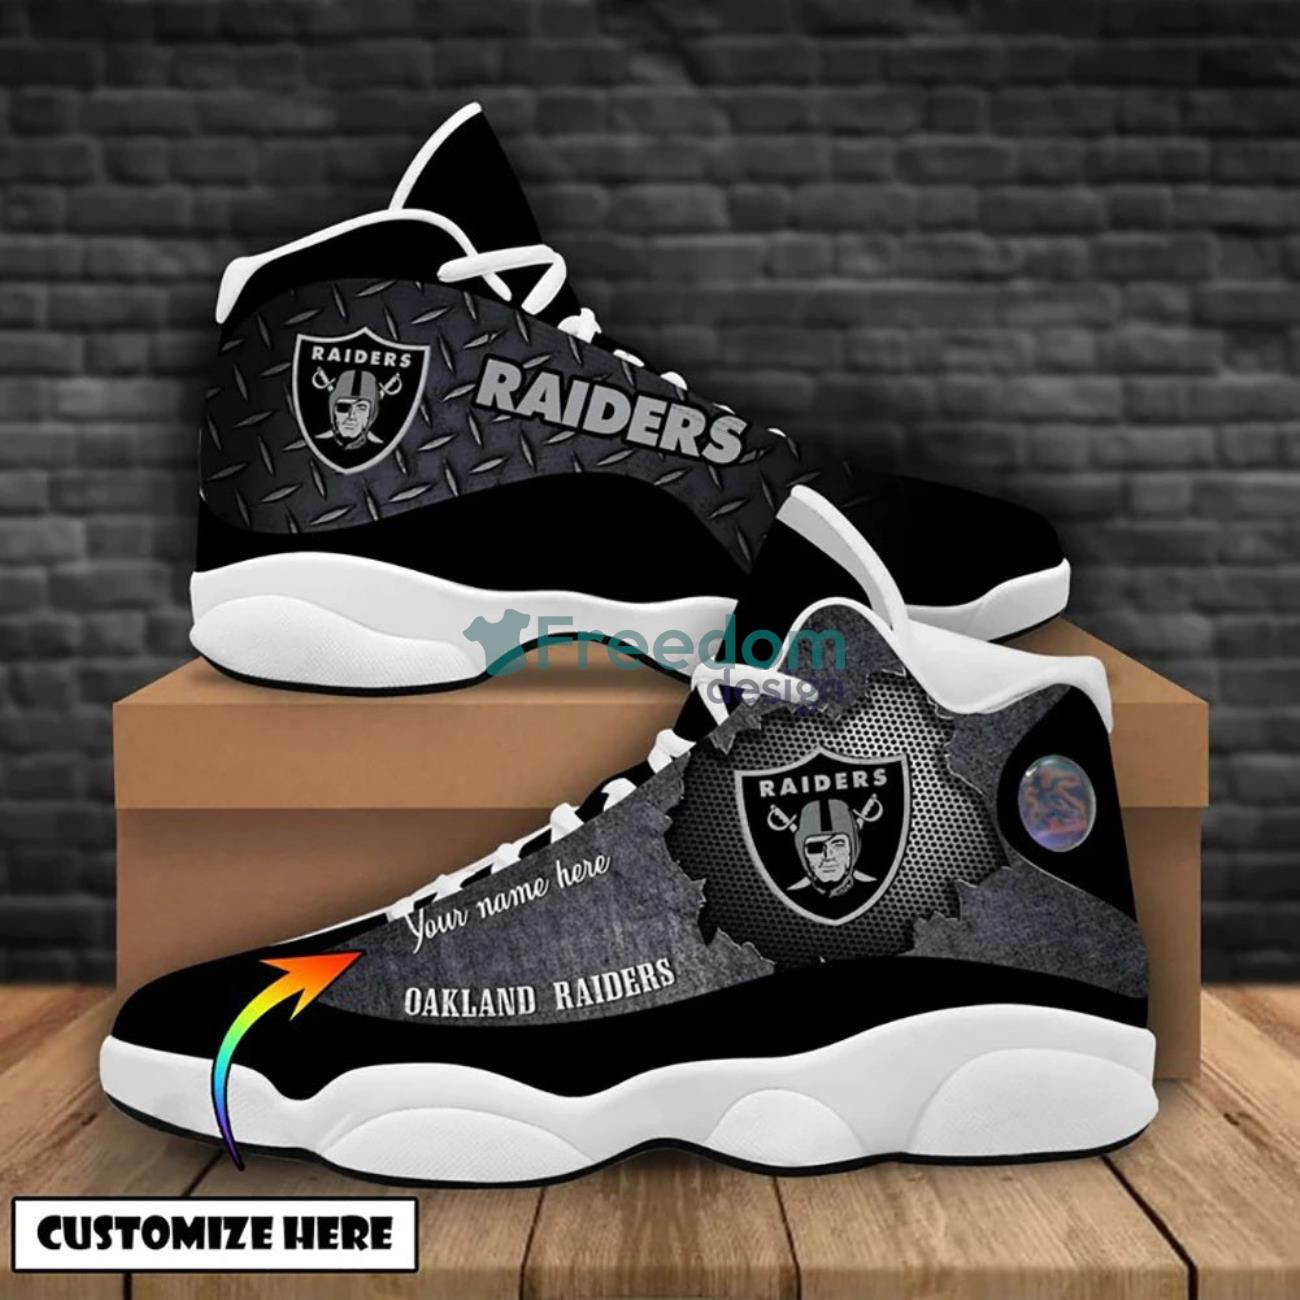 Las Vegas Raiders Custom Name Air Jordan 13 Shoes For Fans